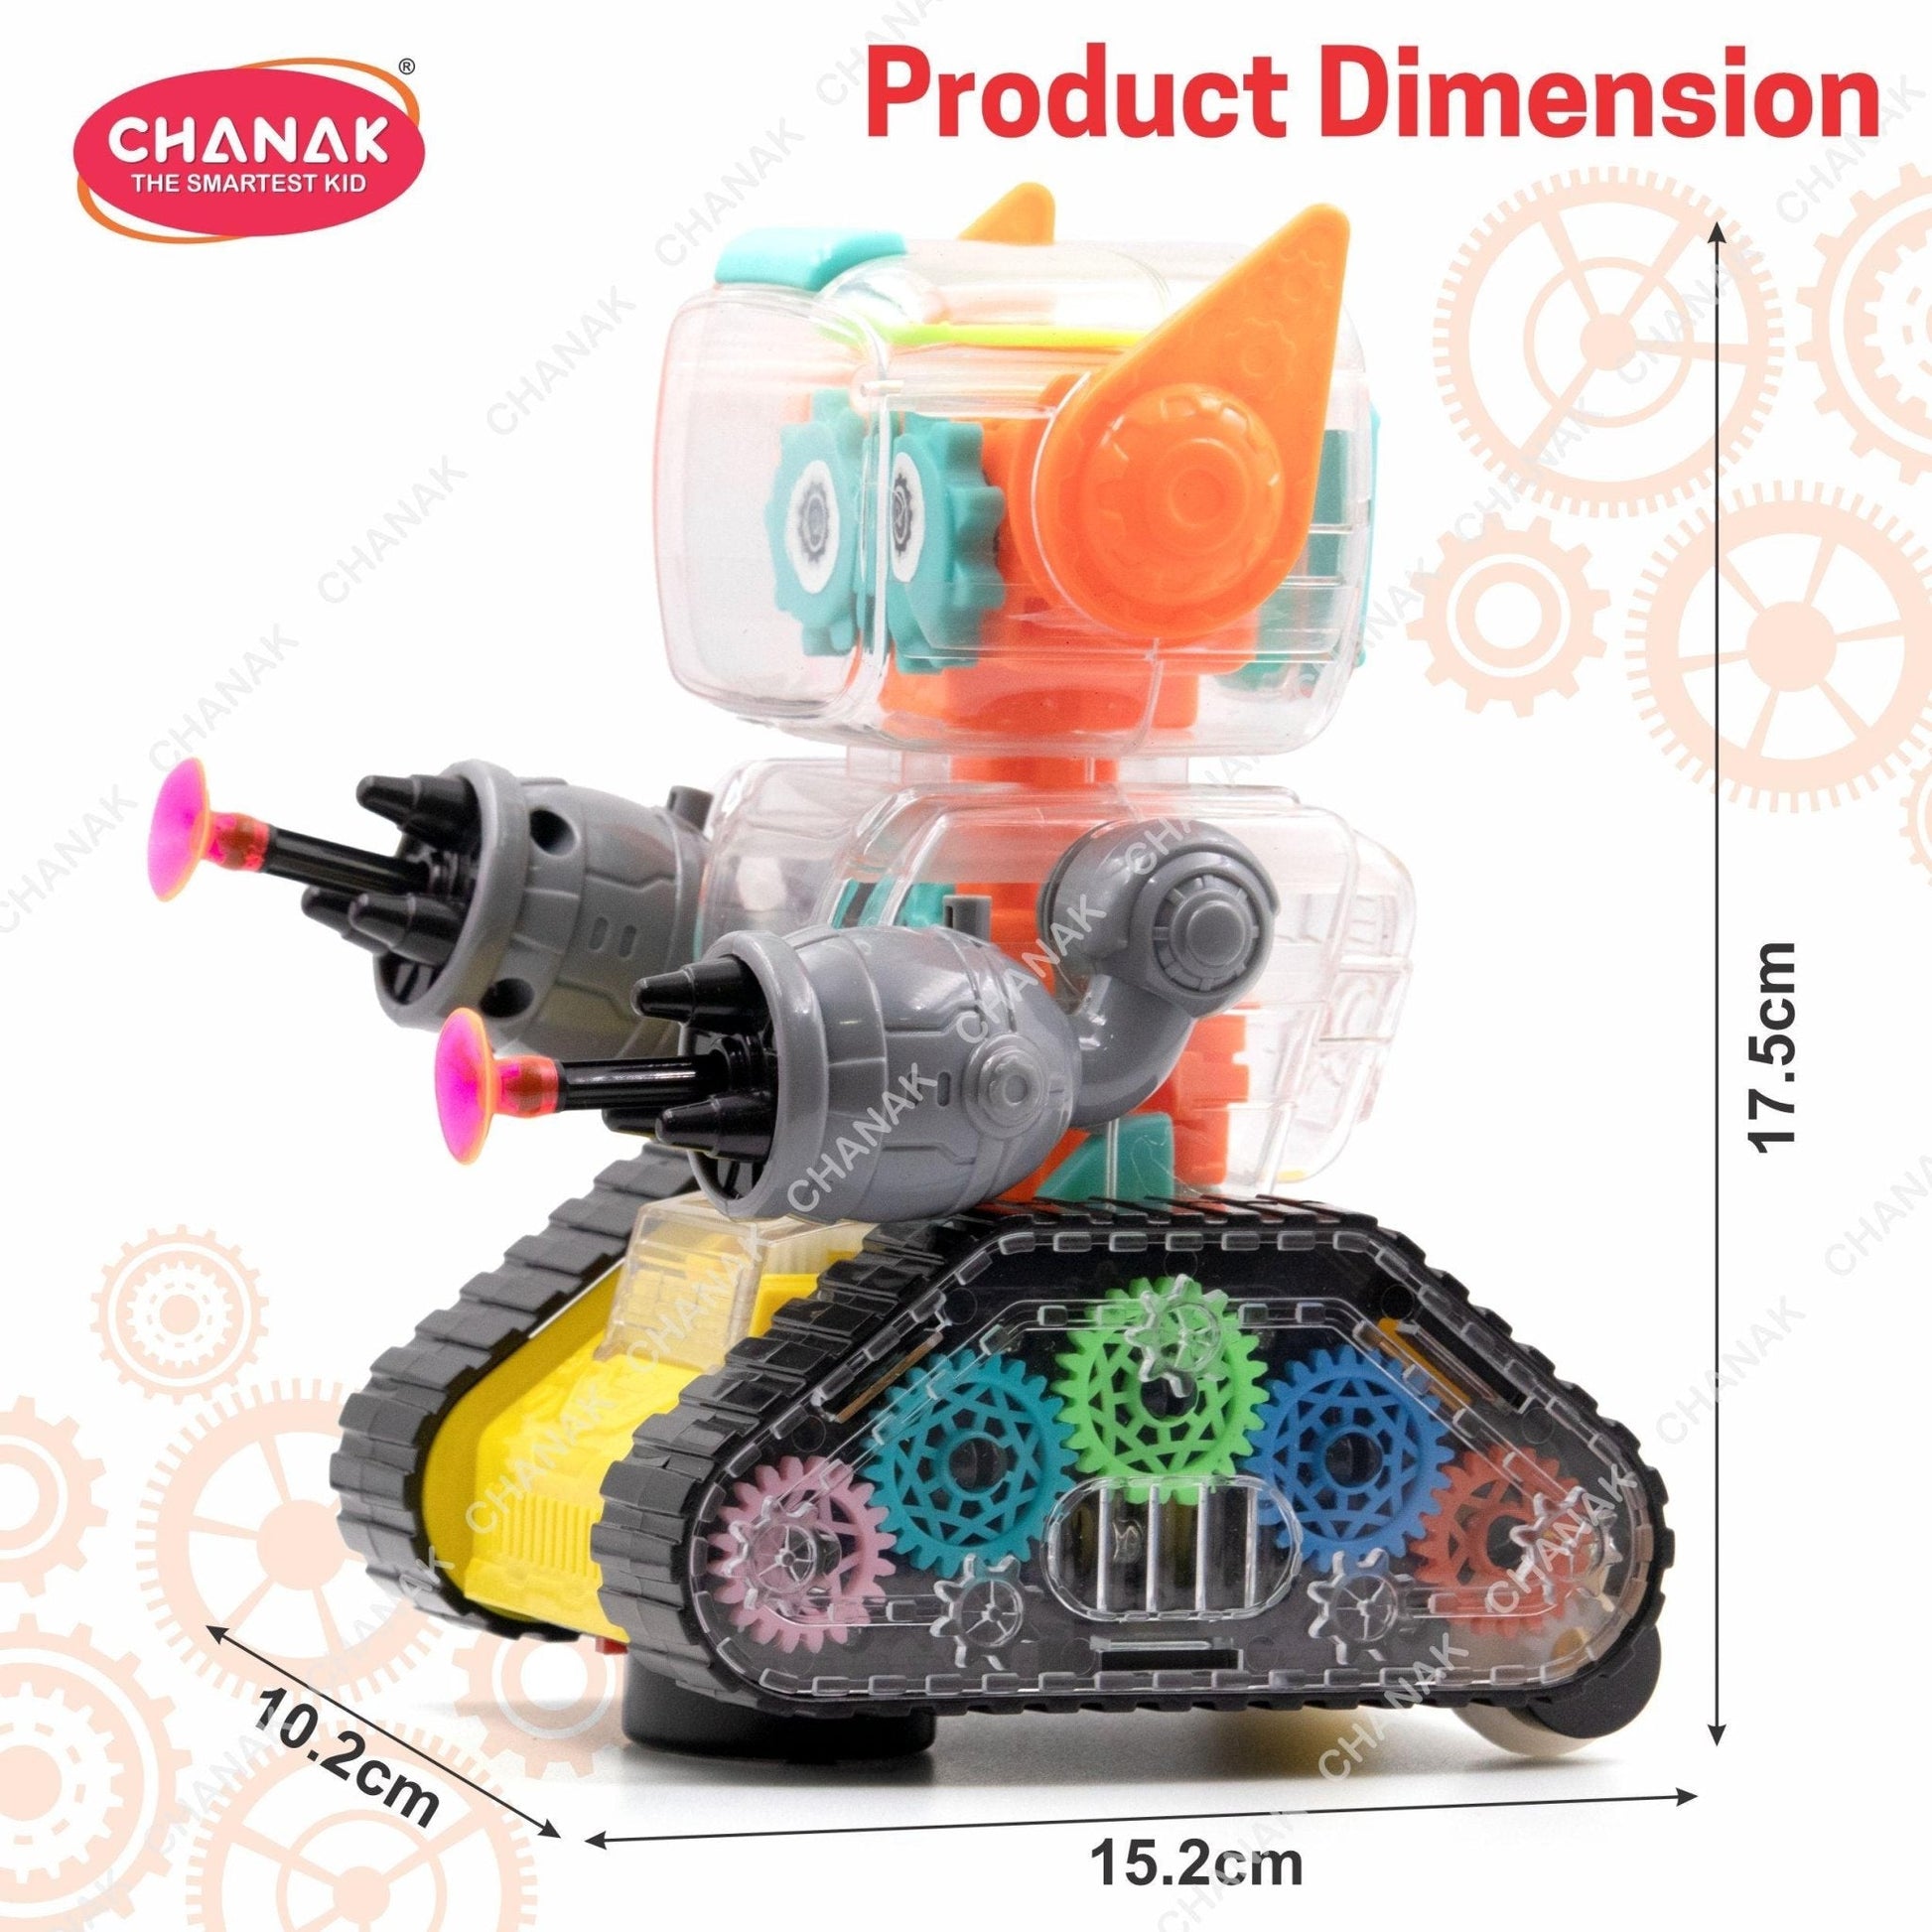 Shop Chanak Gear Robot Car for Kids (Yellow) - chanak